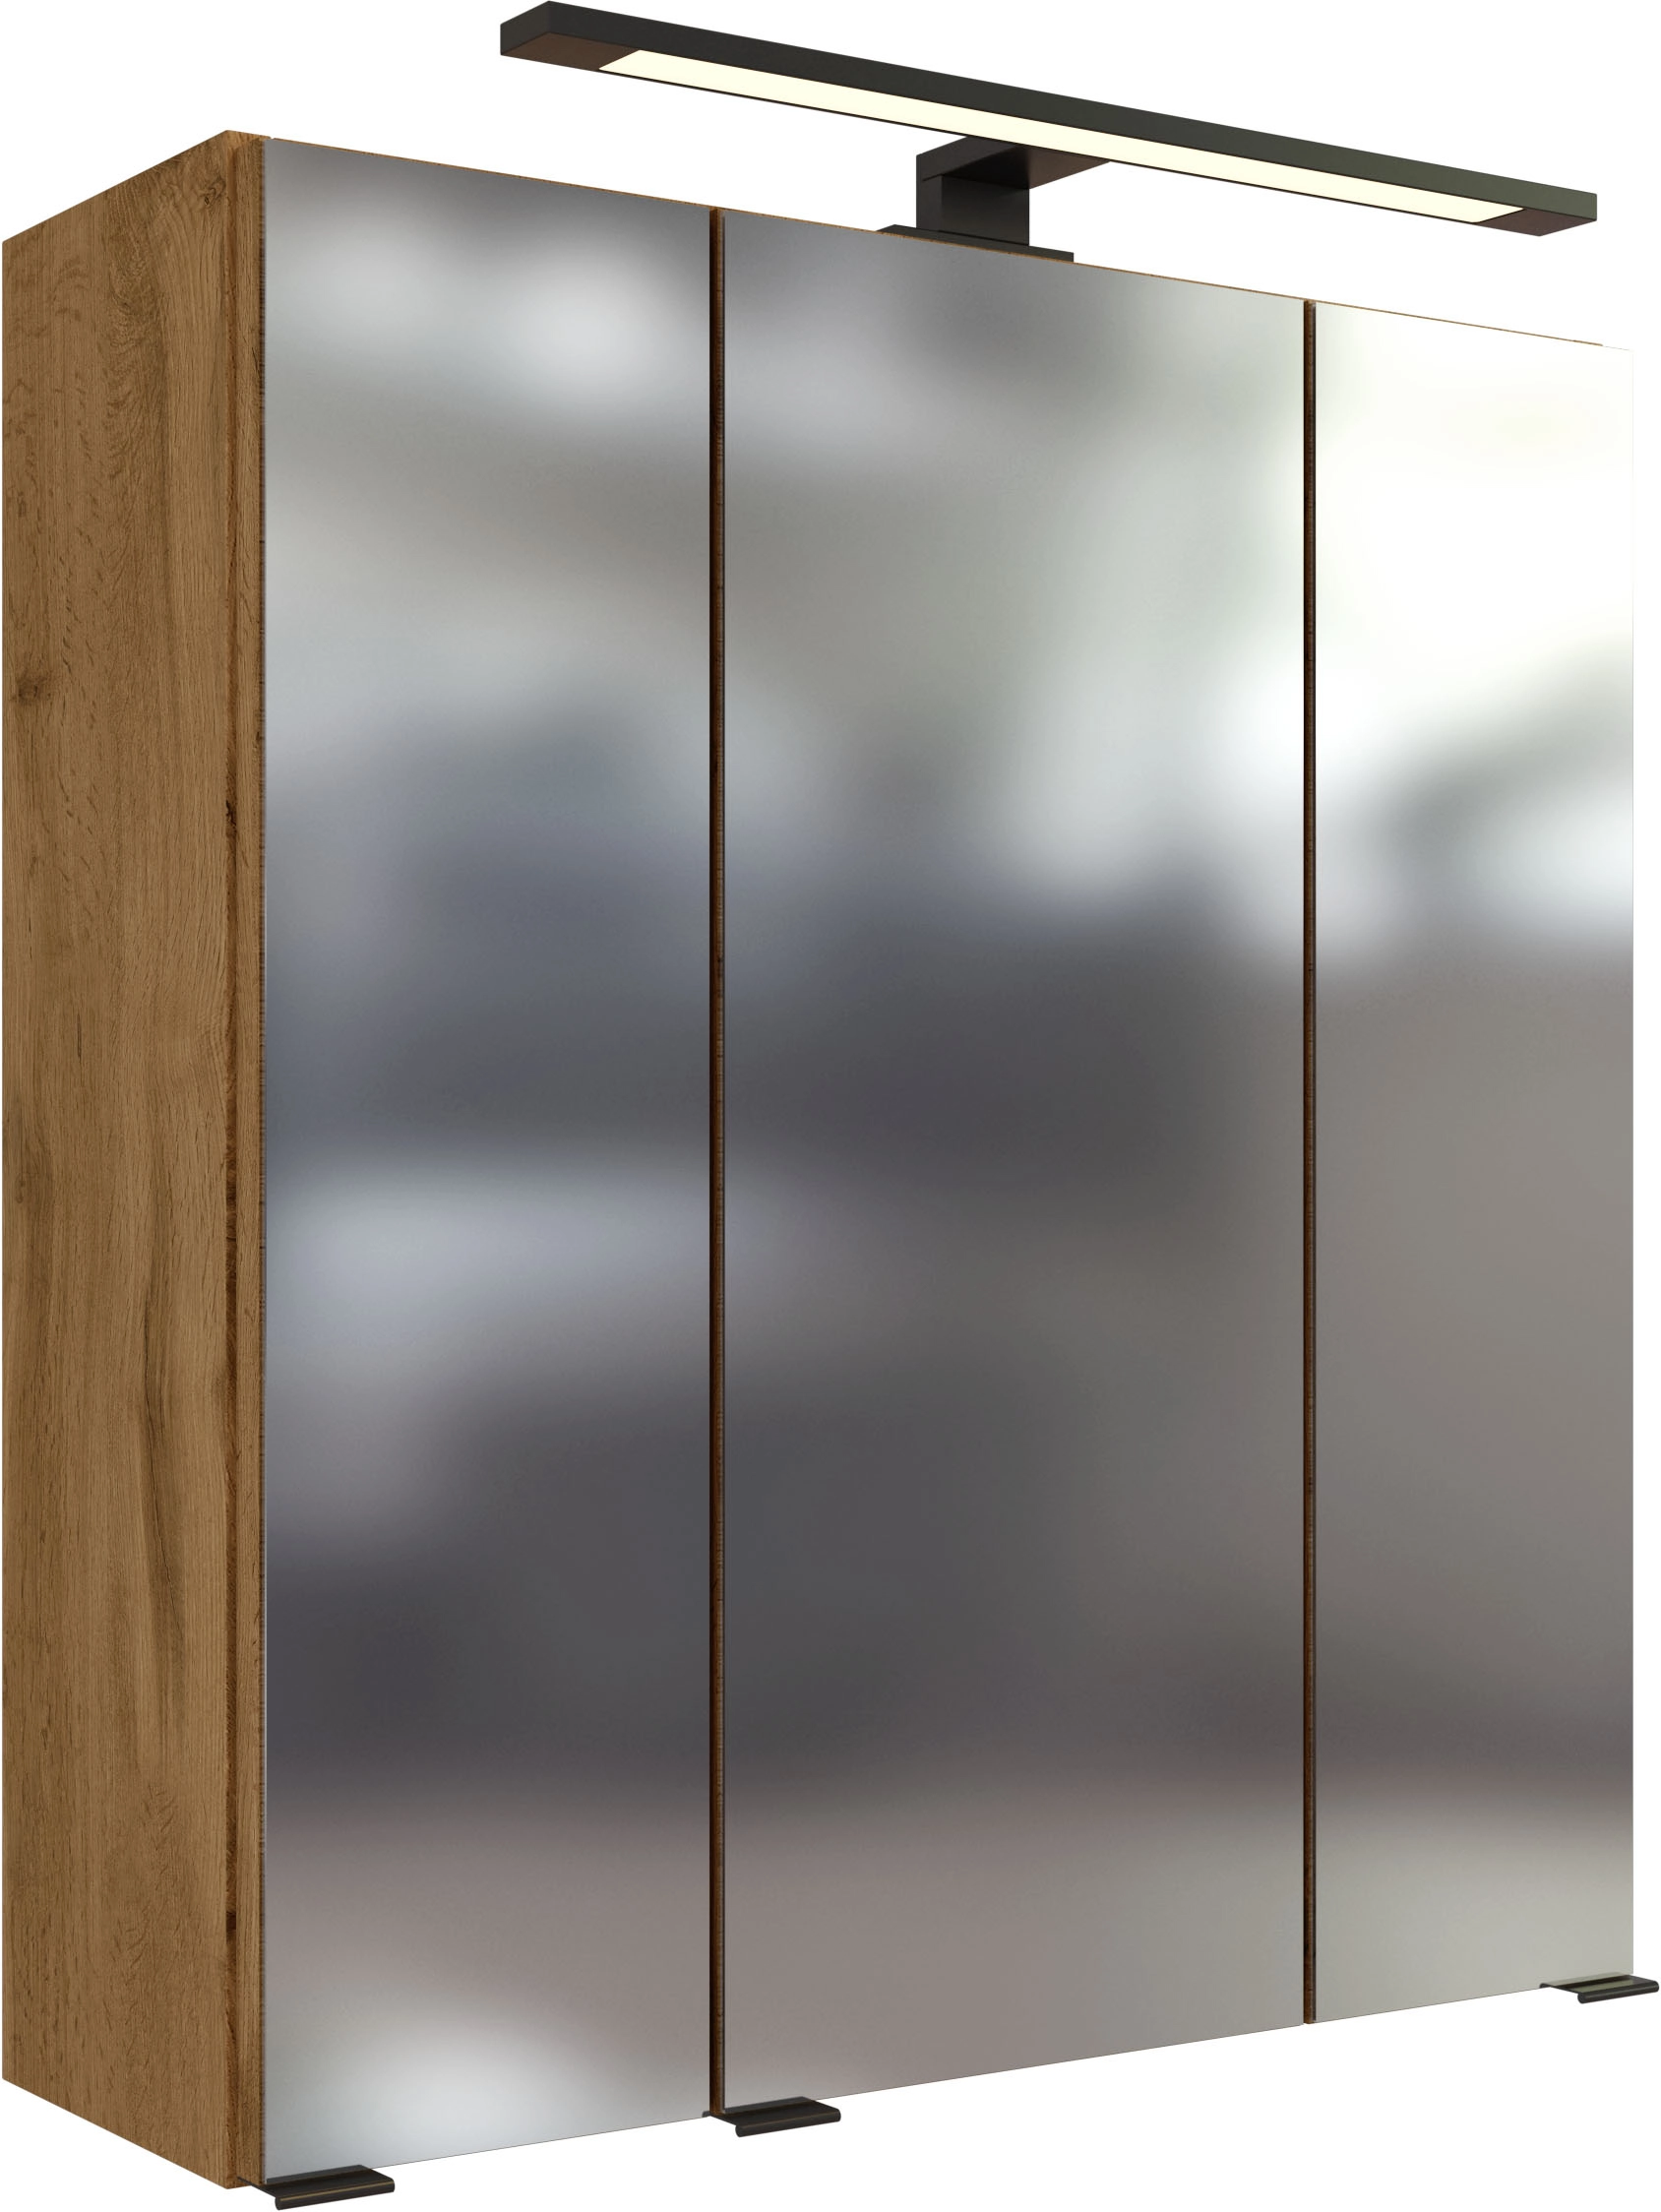 Held Möbel Spiegelschrank Florenz 210.1.3240 Eiche 60 cm Mit Softclose Türen